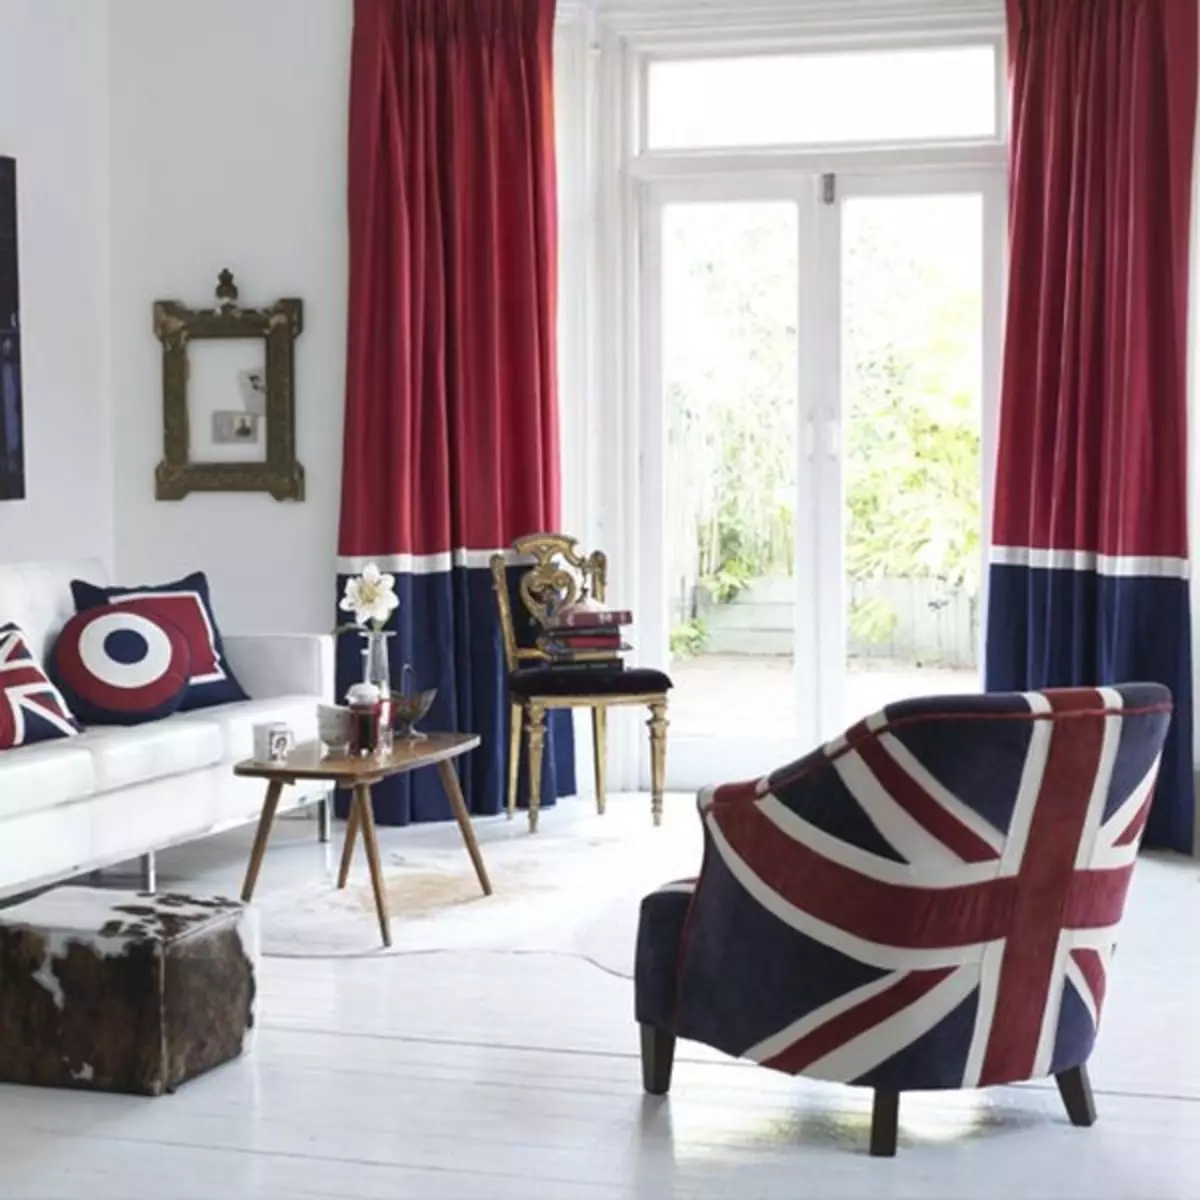 Més a prop de Londres: Bandera britànica a l'interior (Jacks Union - 80 fotos)